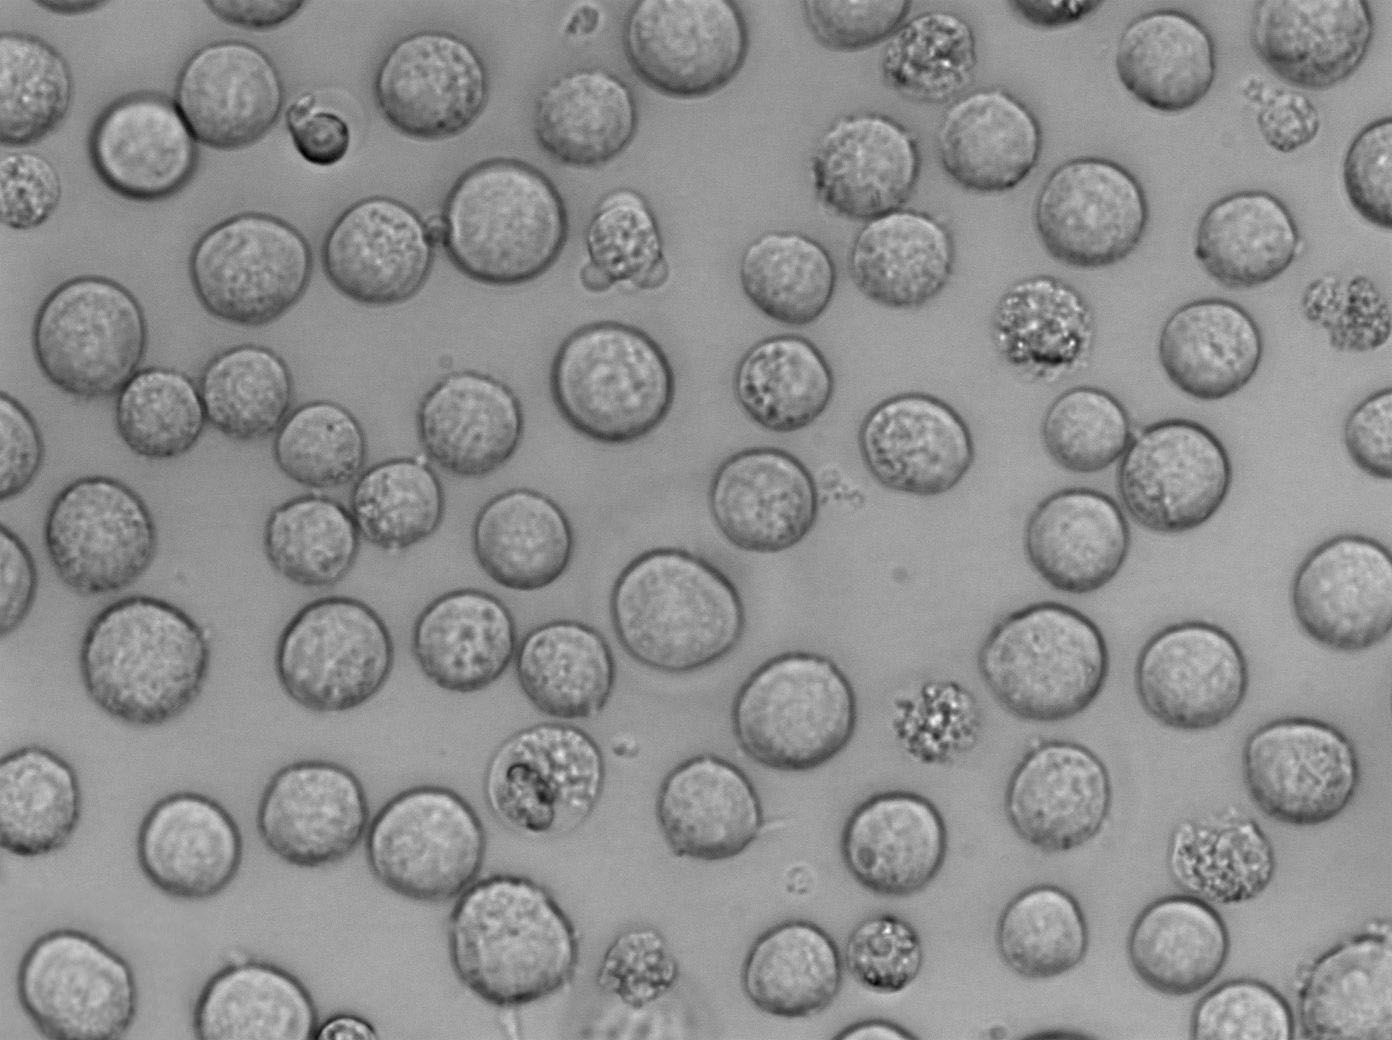 MEG-01:人成巨核细胞白血病复苏细胞(提供STR鉴定图谱)